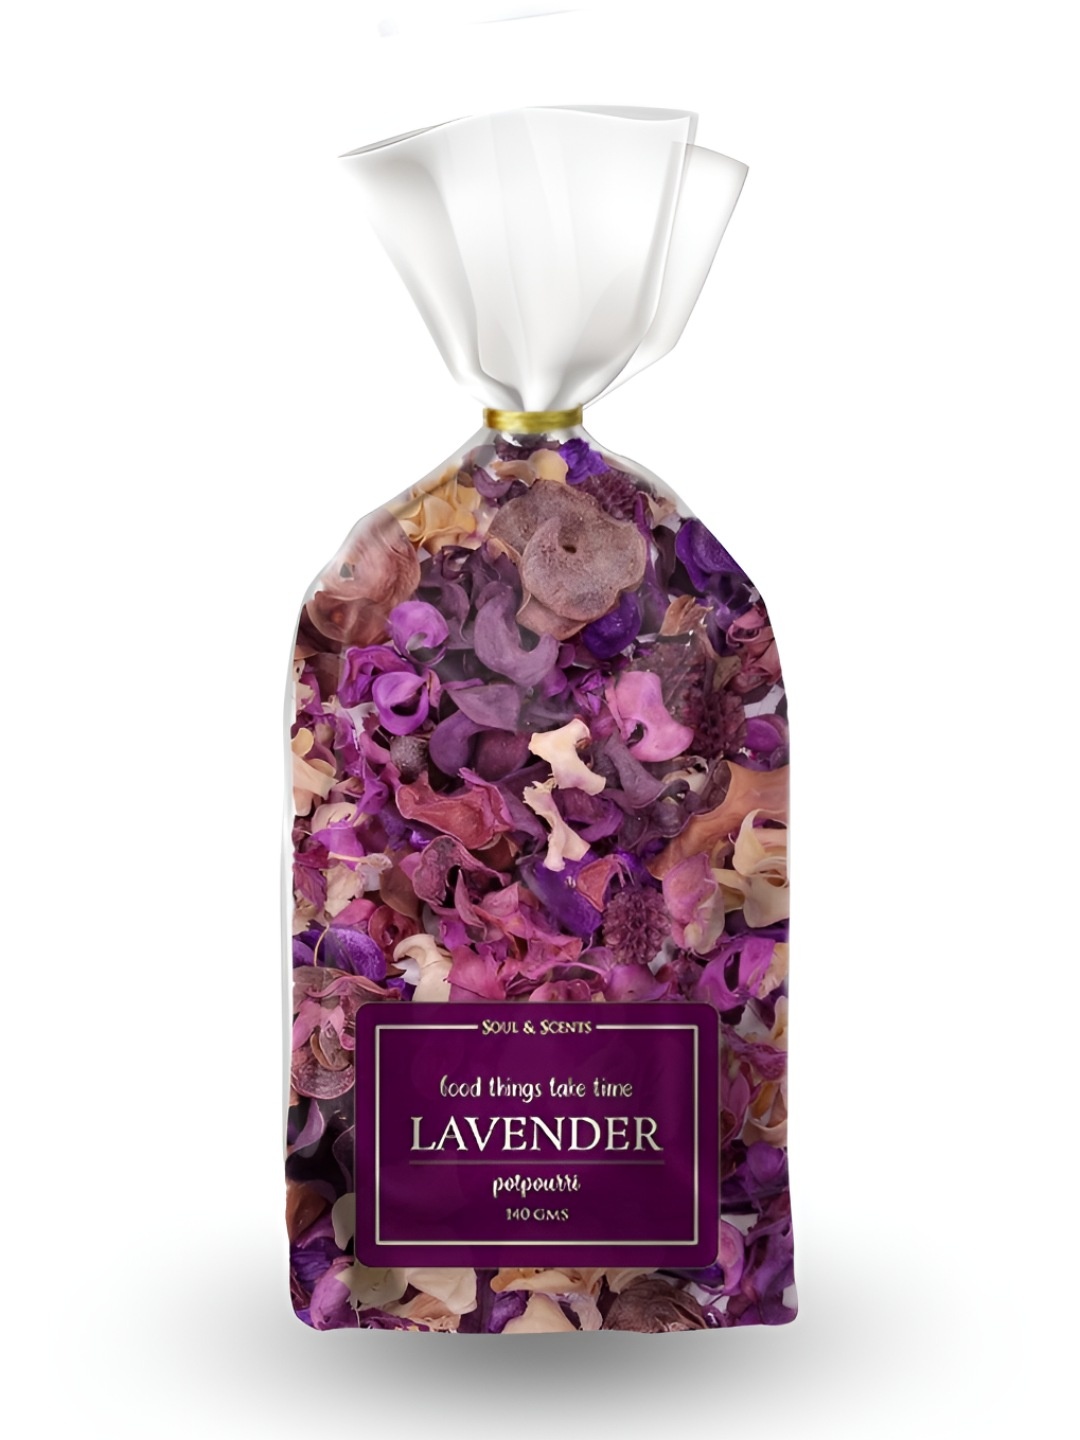 

SOUL & SCENTS Lavender Dried Flowers Potpourri 140g